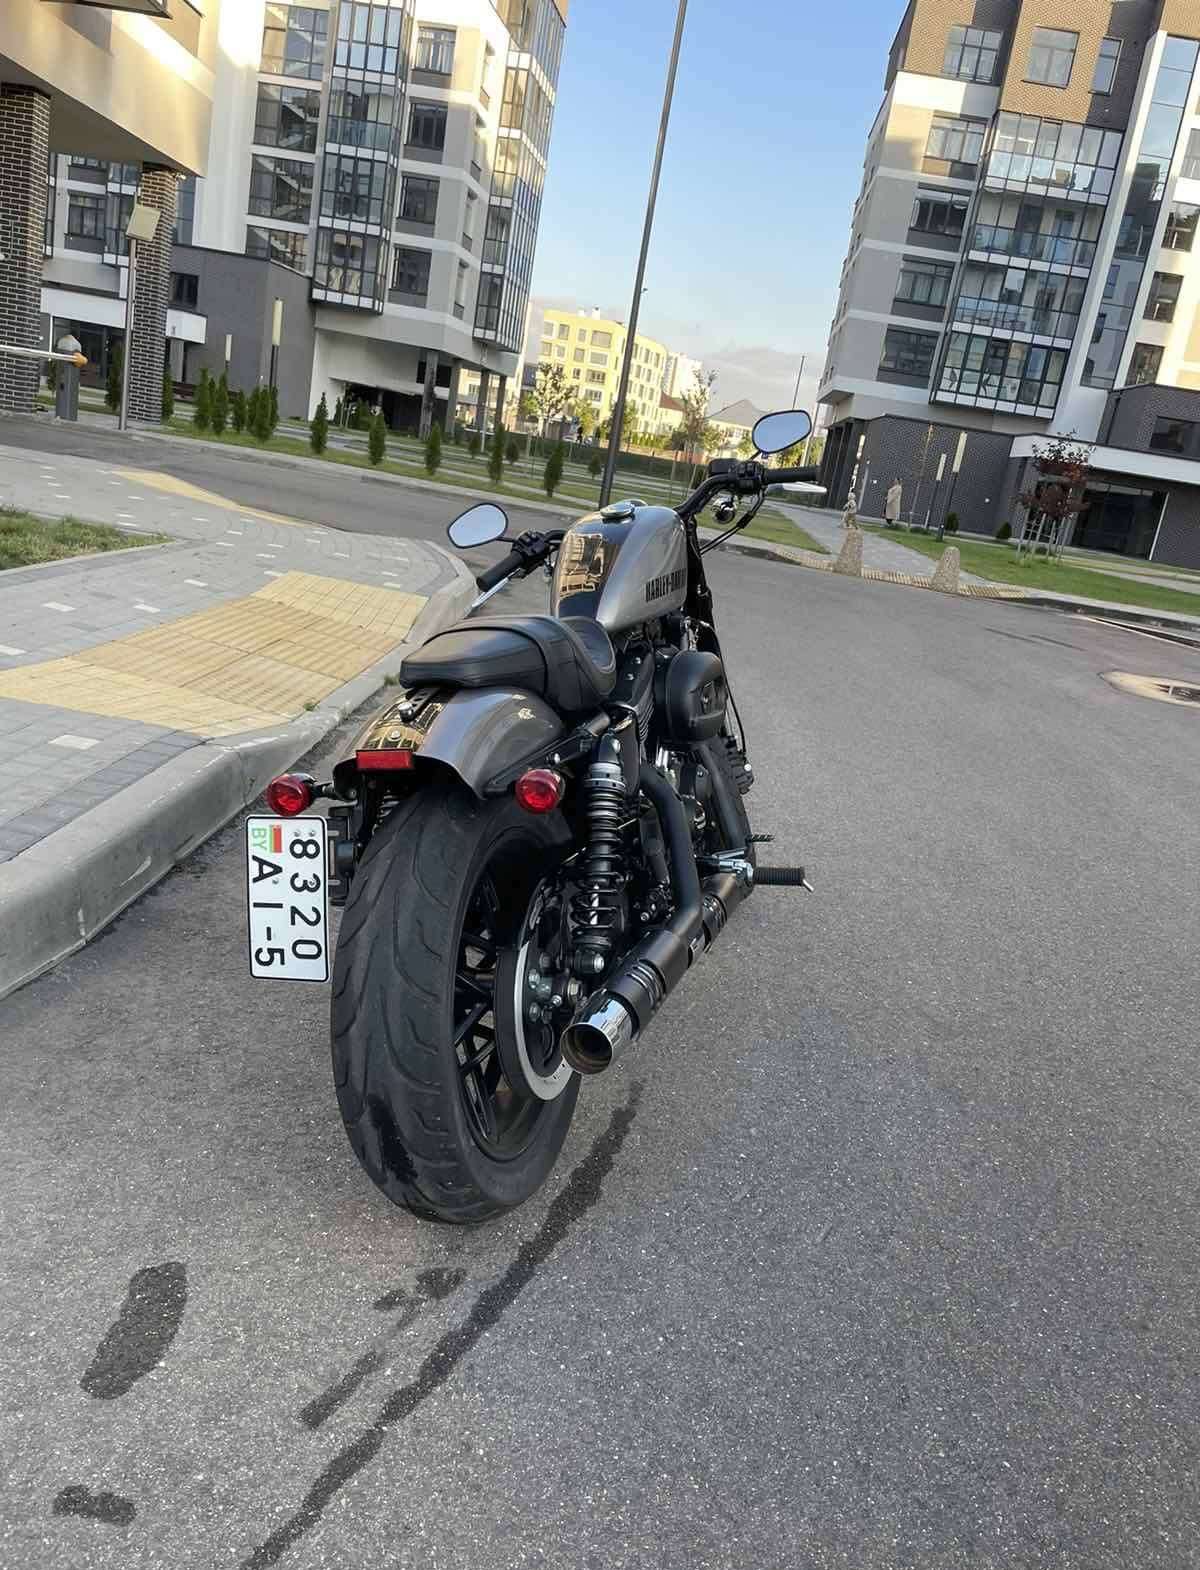 Купить мотоцикл Harley-Davidson Sportster в Беларуси в кредит - цены, характеристики, фото. в Беларуси в кредит